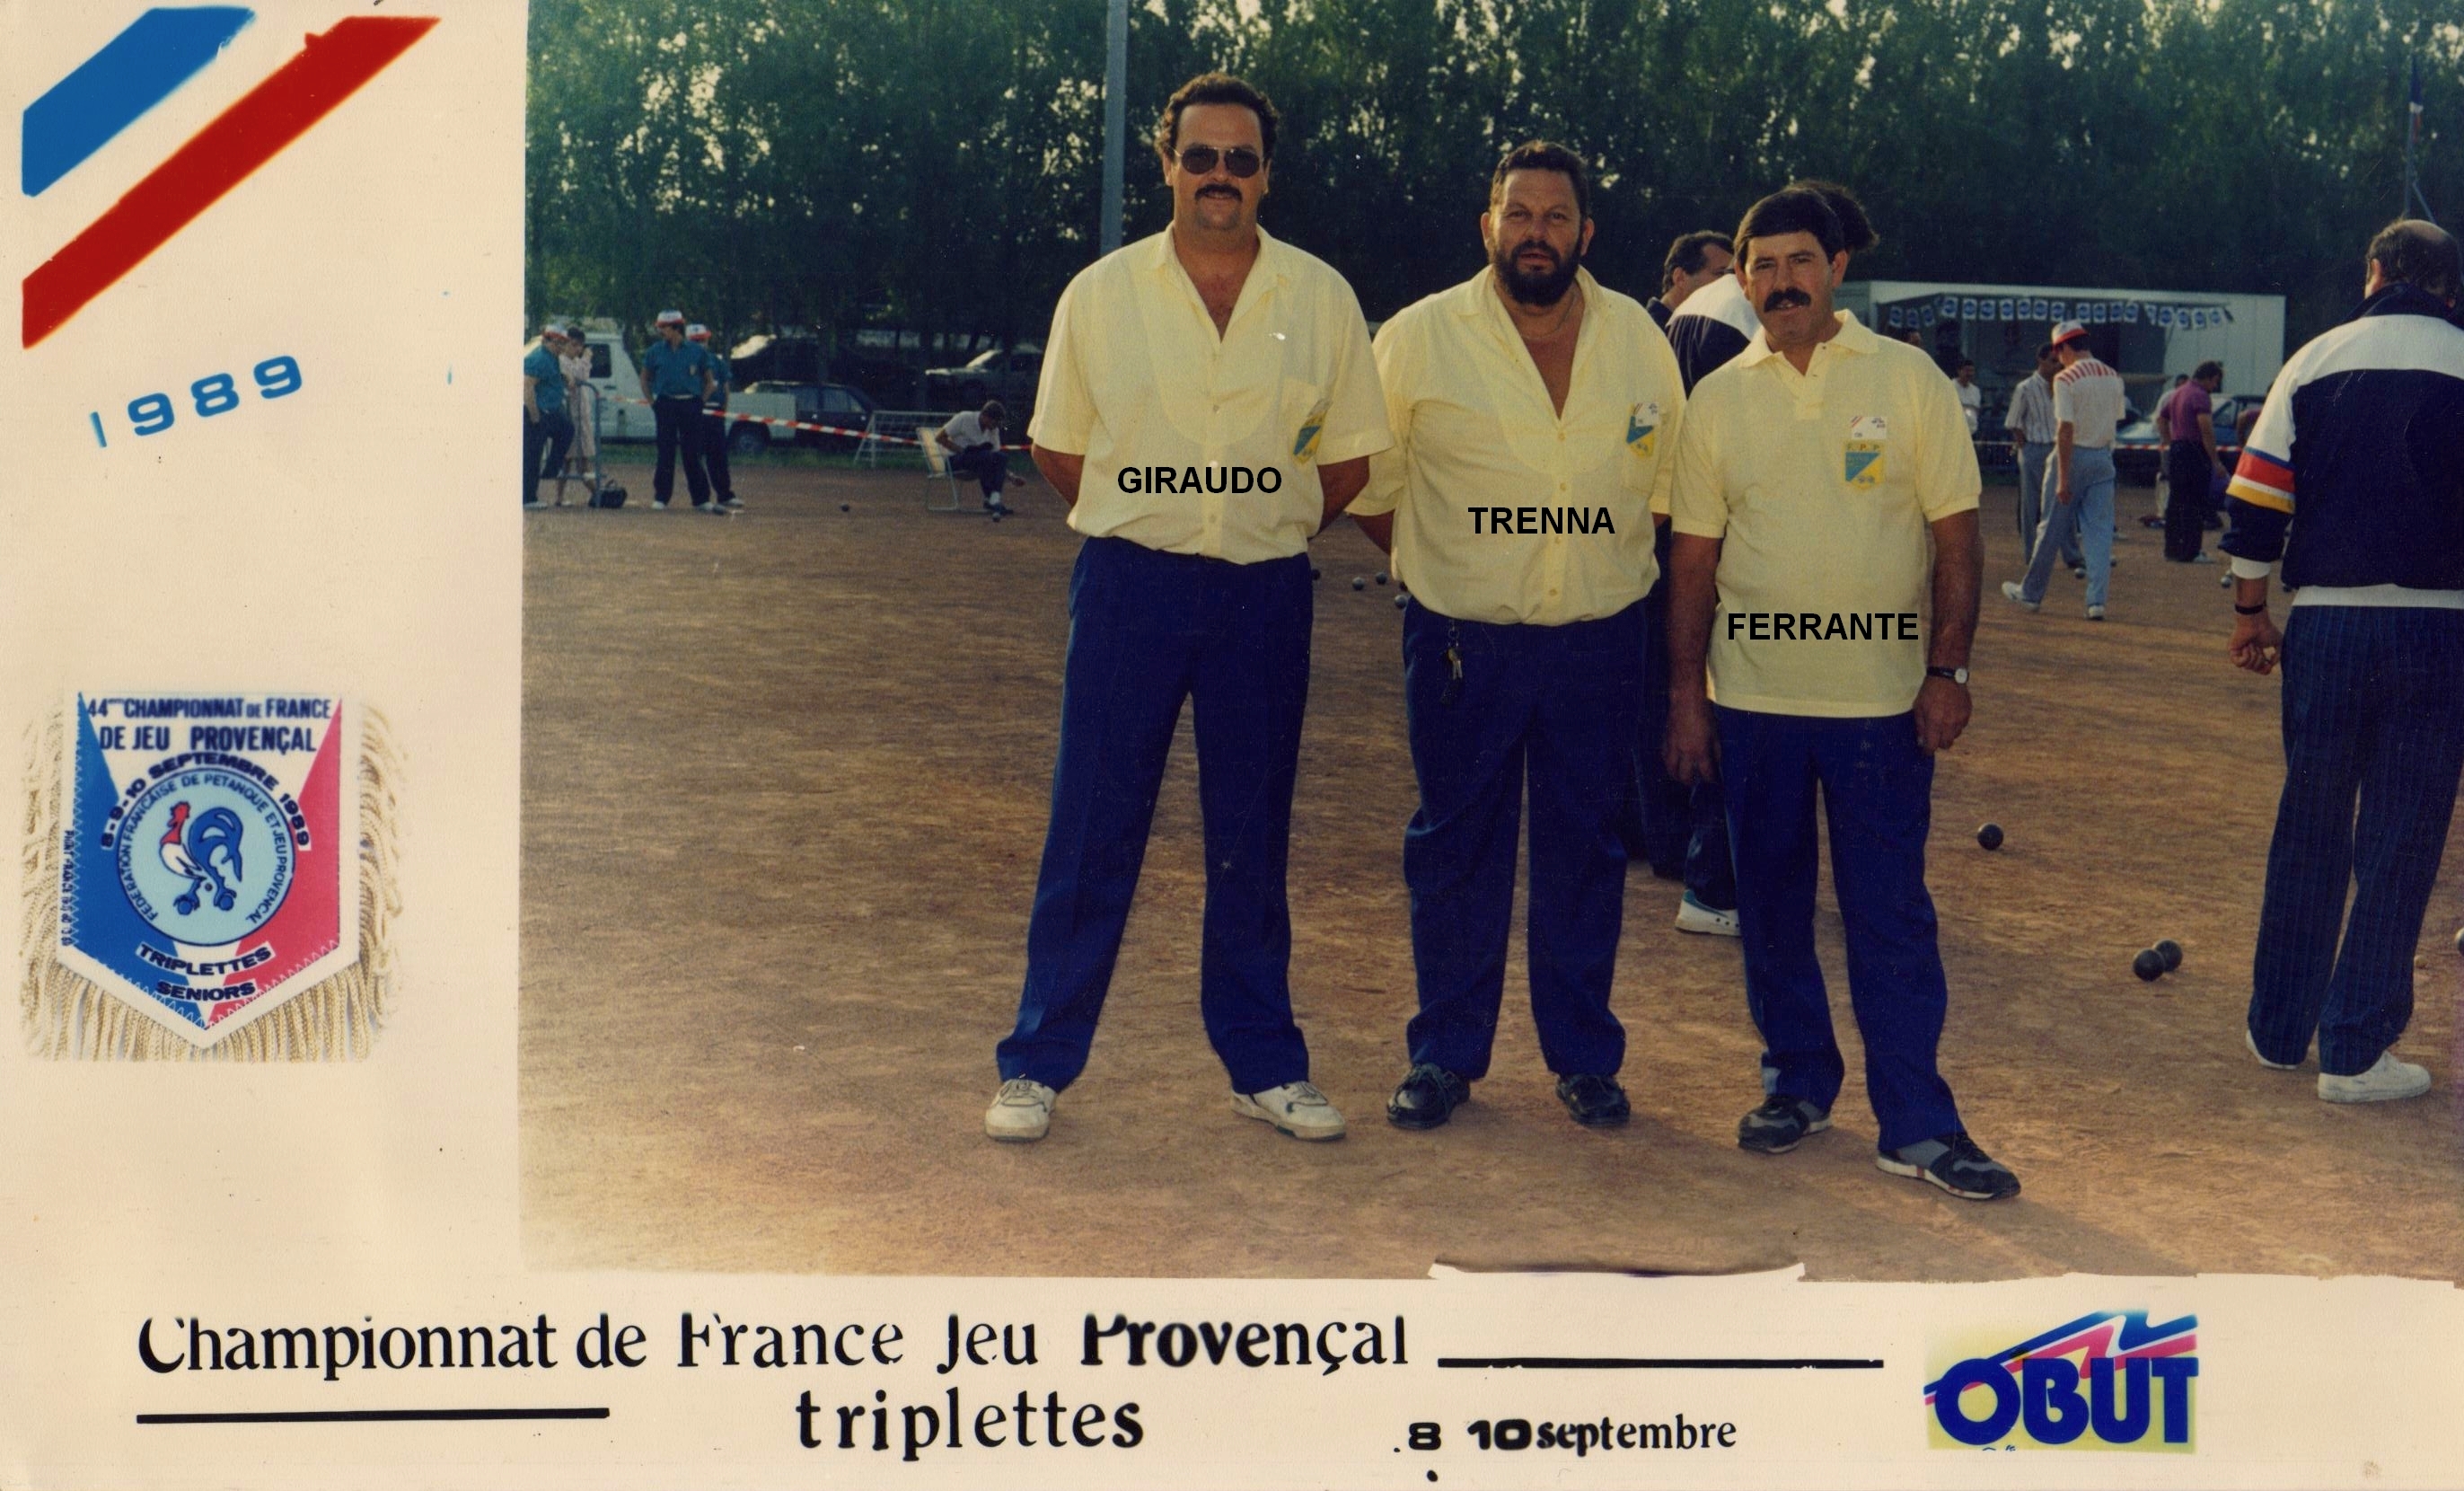 1989 qualifié au championnat de France triplettes au Jeu Provençal